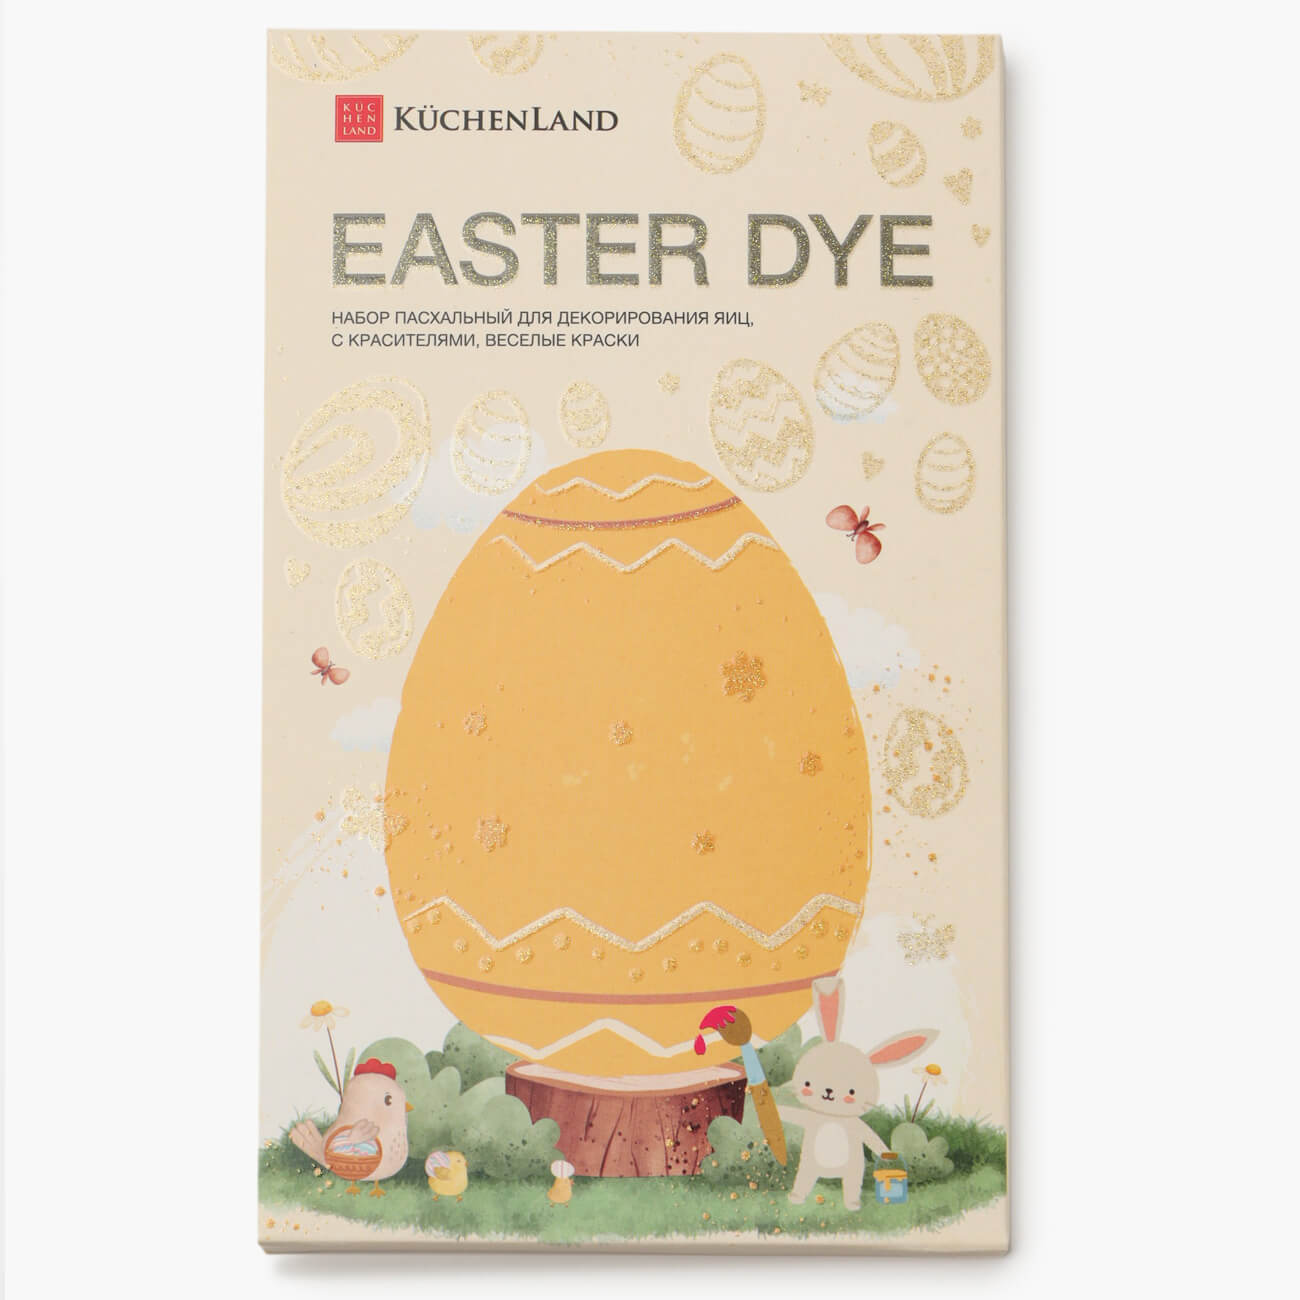 Набор пасхальный для декорирования яиц, 7 цветов/13 пр, Веселые краски, Easter dye изображение № 1